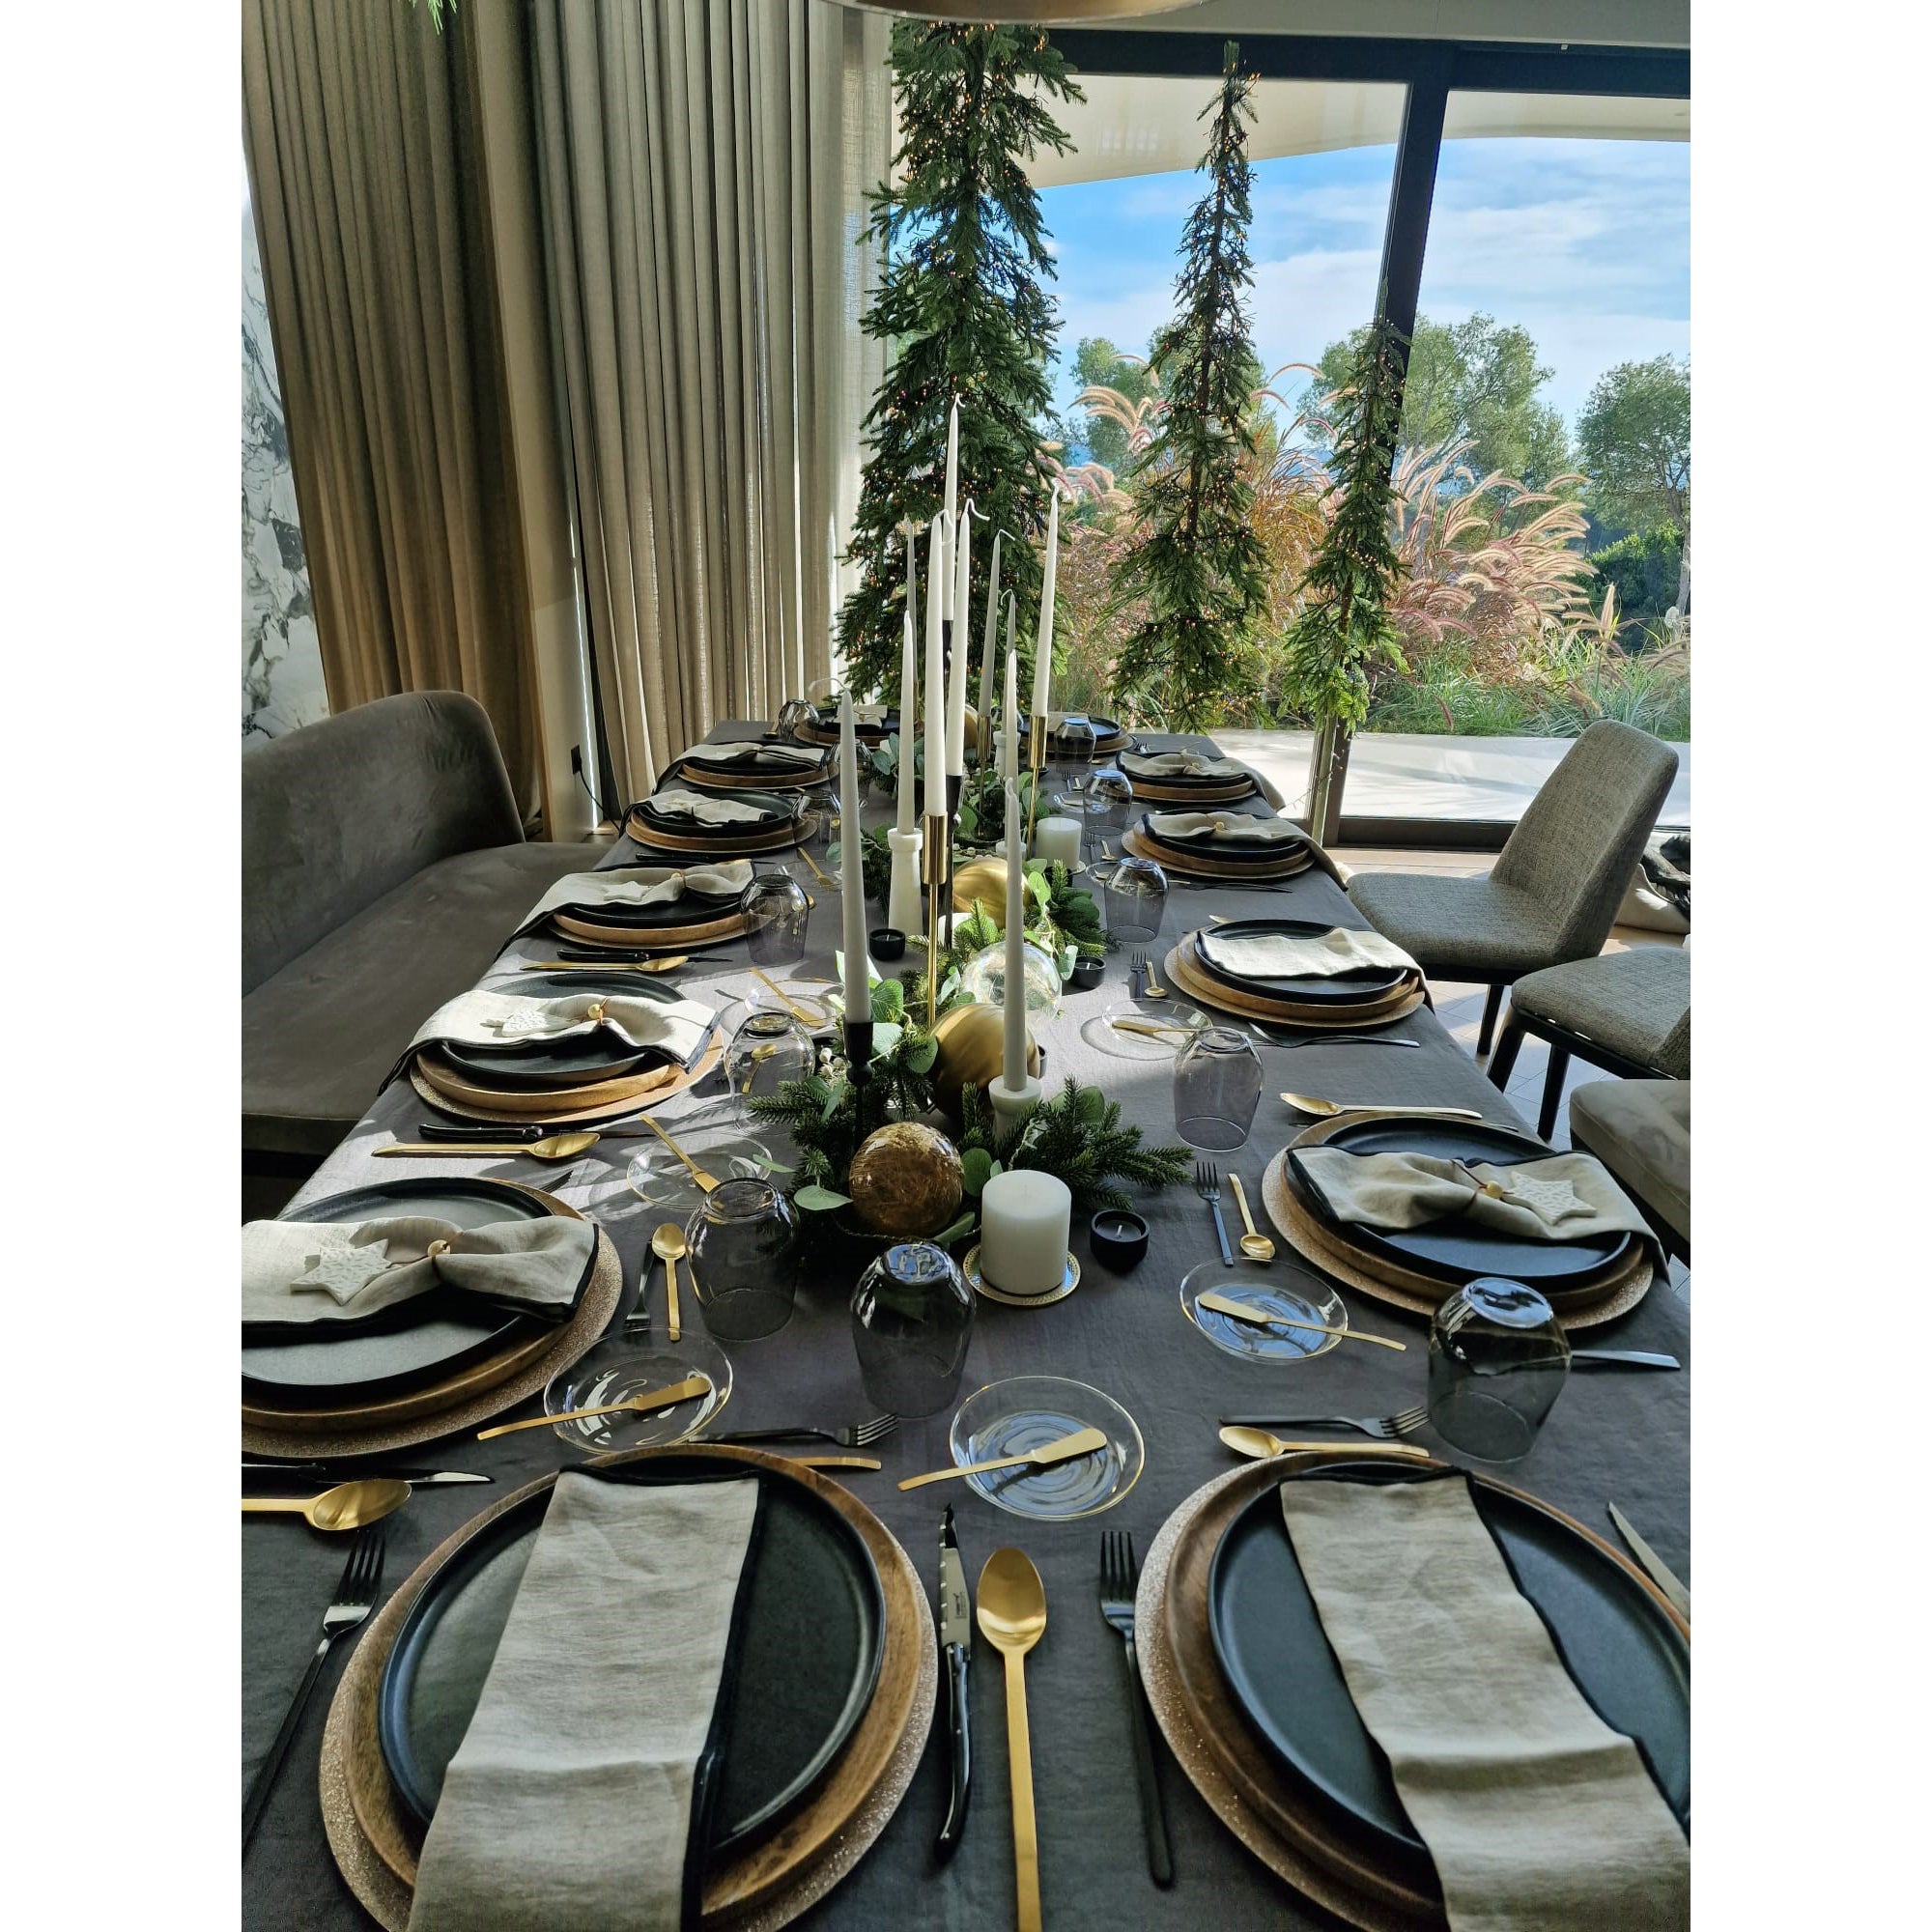 Mesa con platos, servilletas de lino natural y mantel de lino gris.